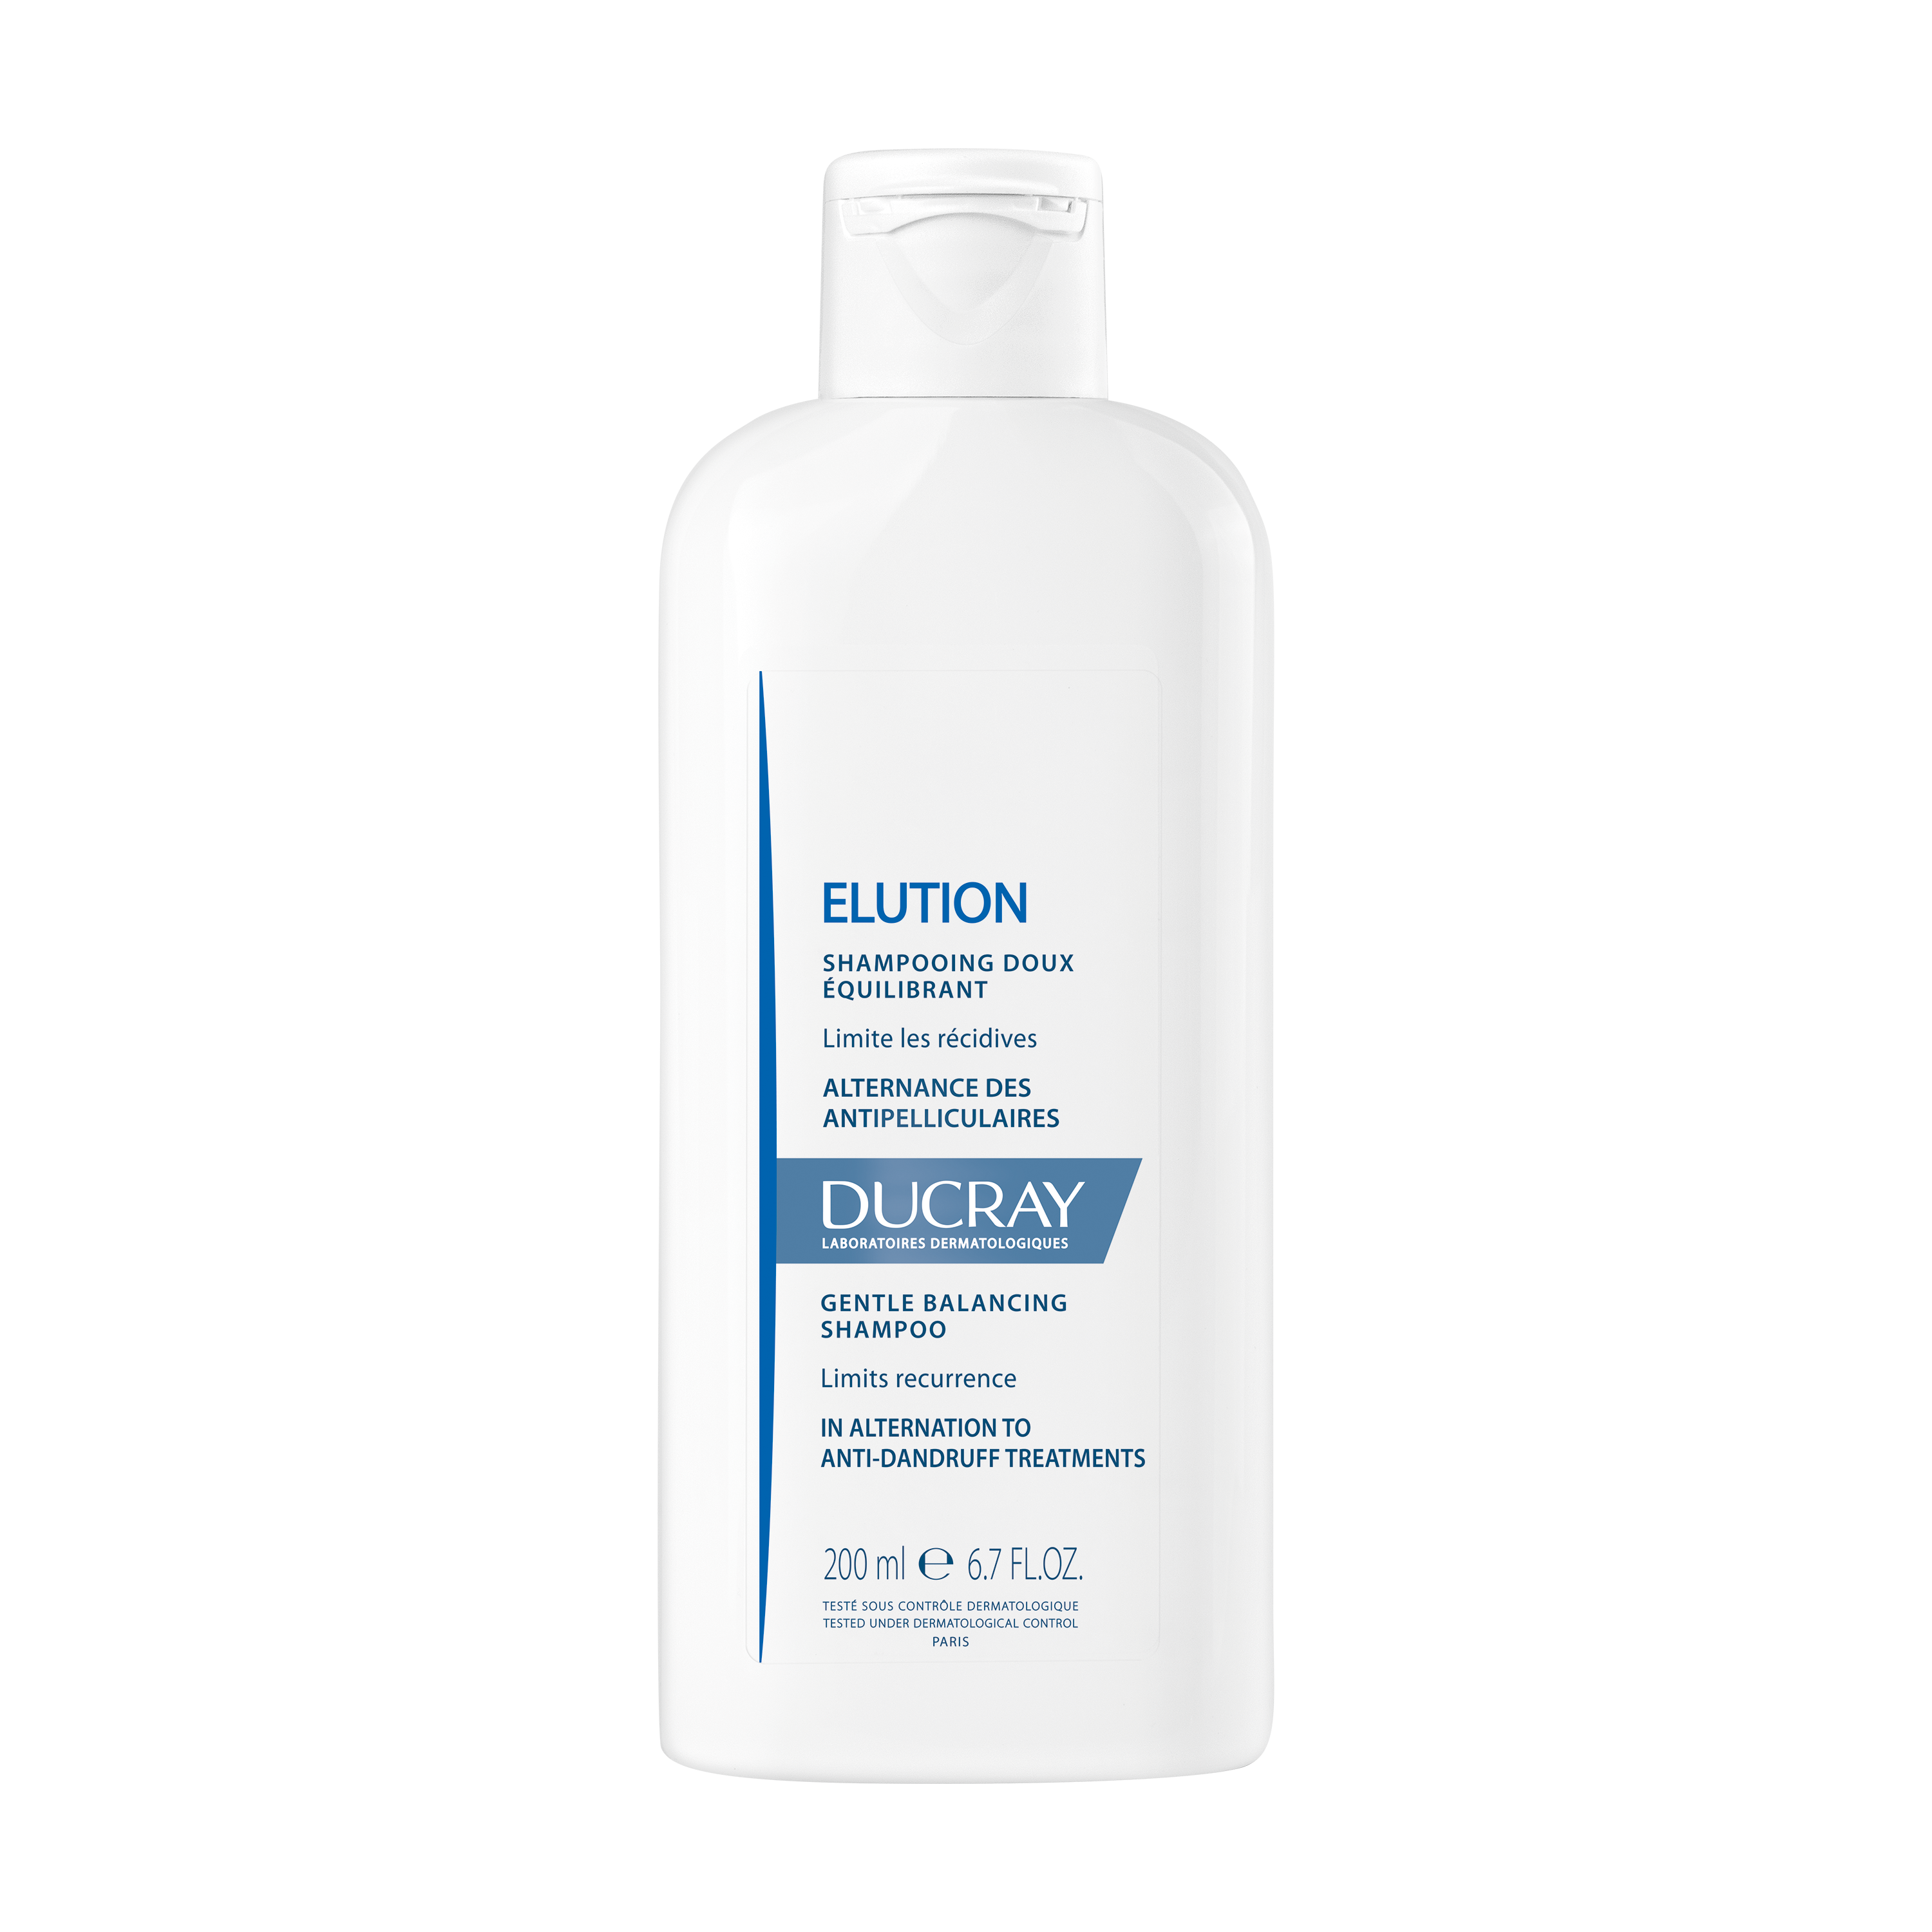 ელუშენი ნაზი დამაბალანსებელი შამპუნი - დუკრე / ELUTION Gentle balancing shampoo – DUCRAY